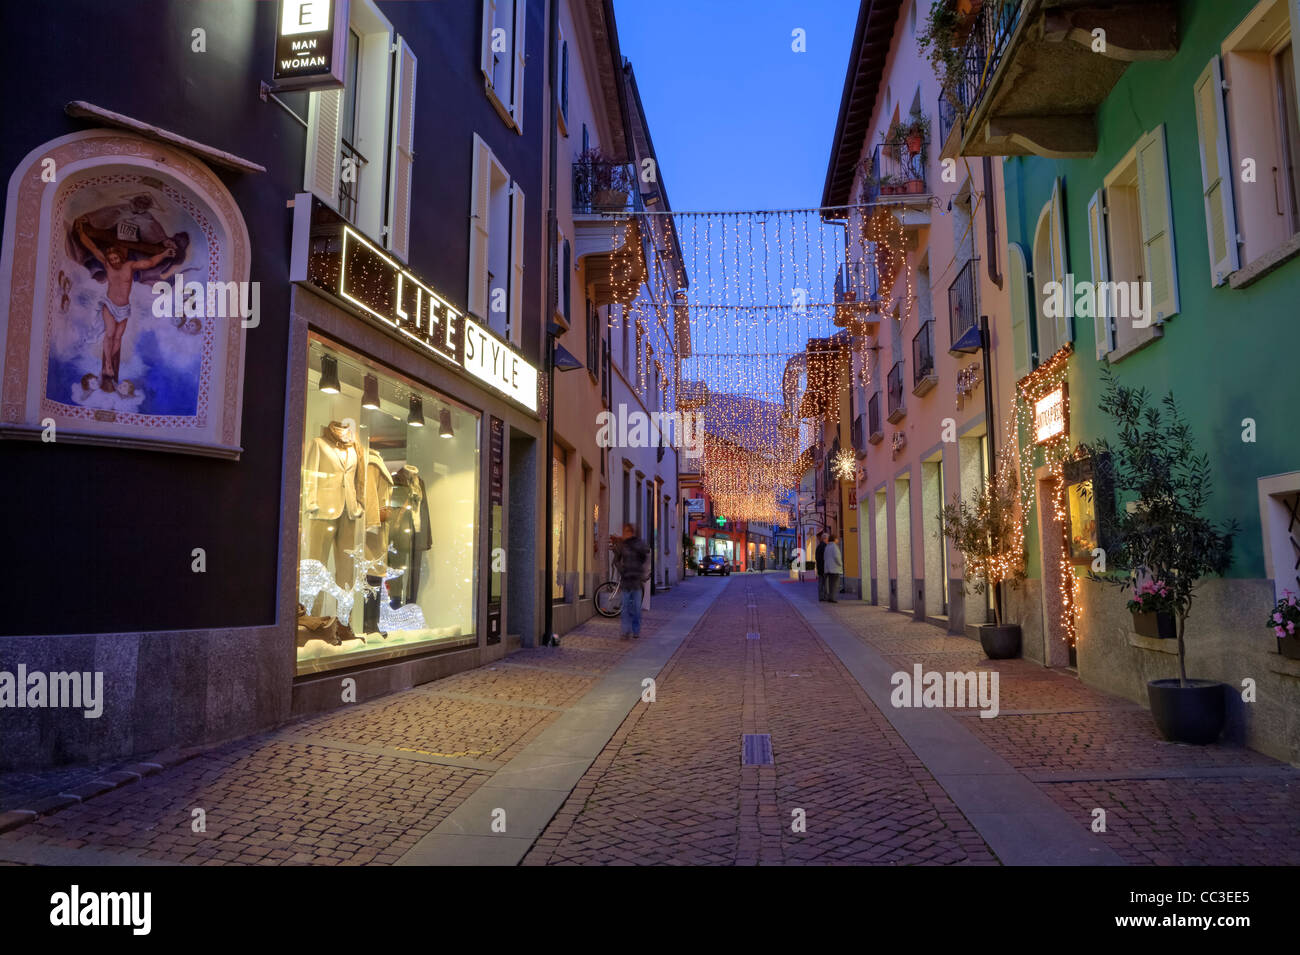 beleuchtet, shopping Street, Via Borgo von Ascona, Tessin, Schweiz zur  Weihnachtszeit Stockfotografie - Alamy